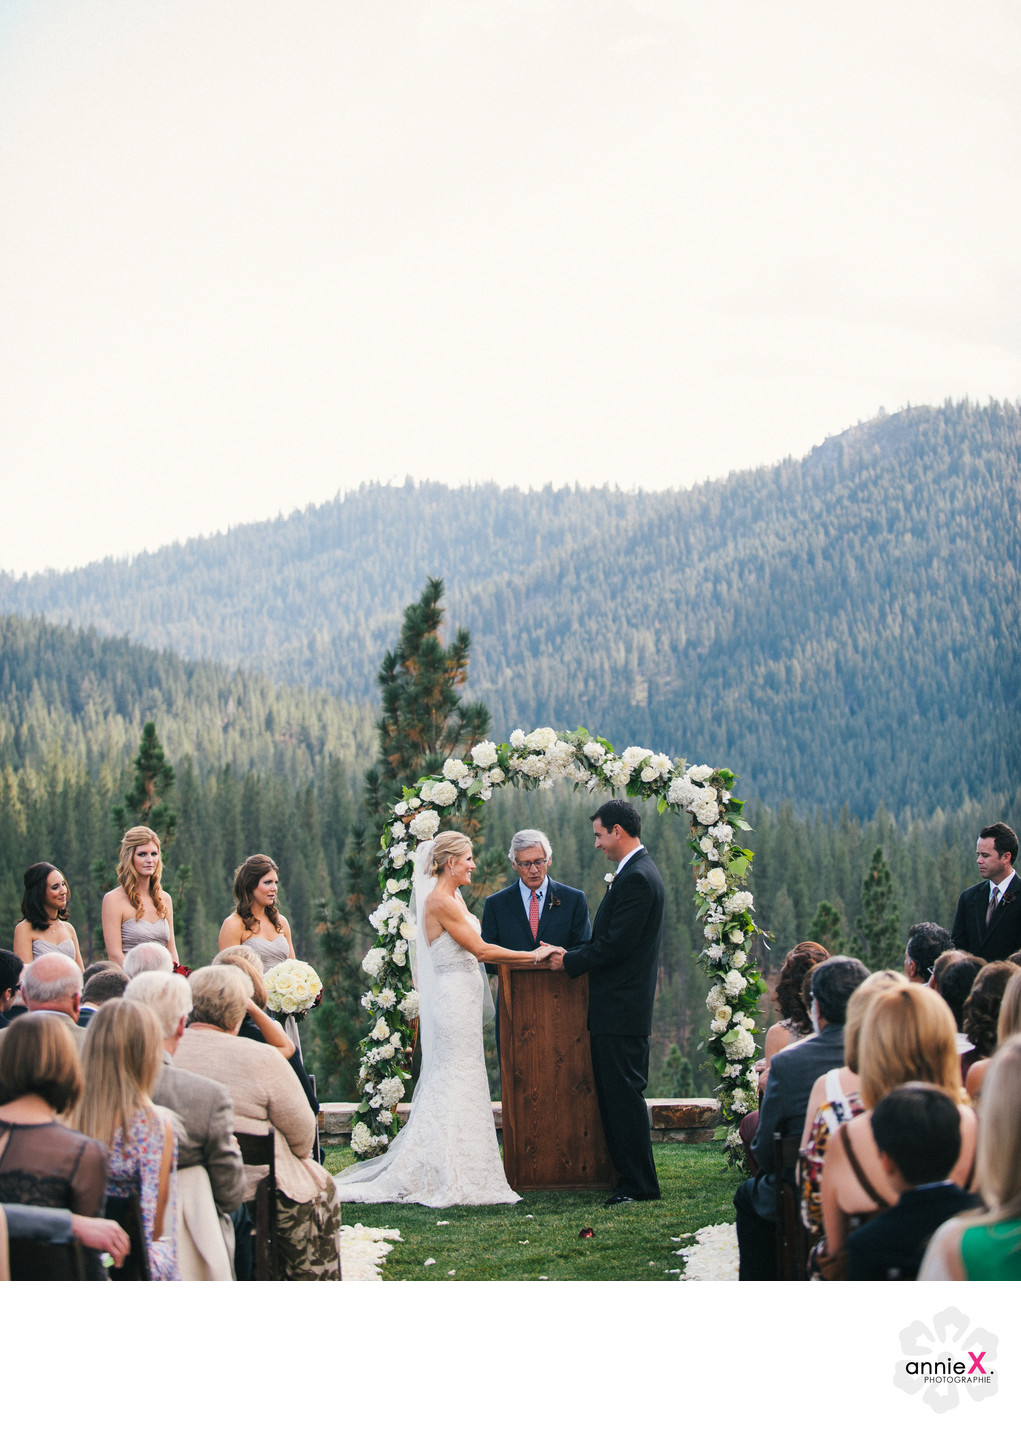 Mountain view wedding